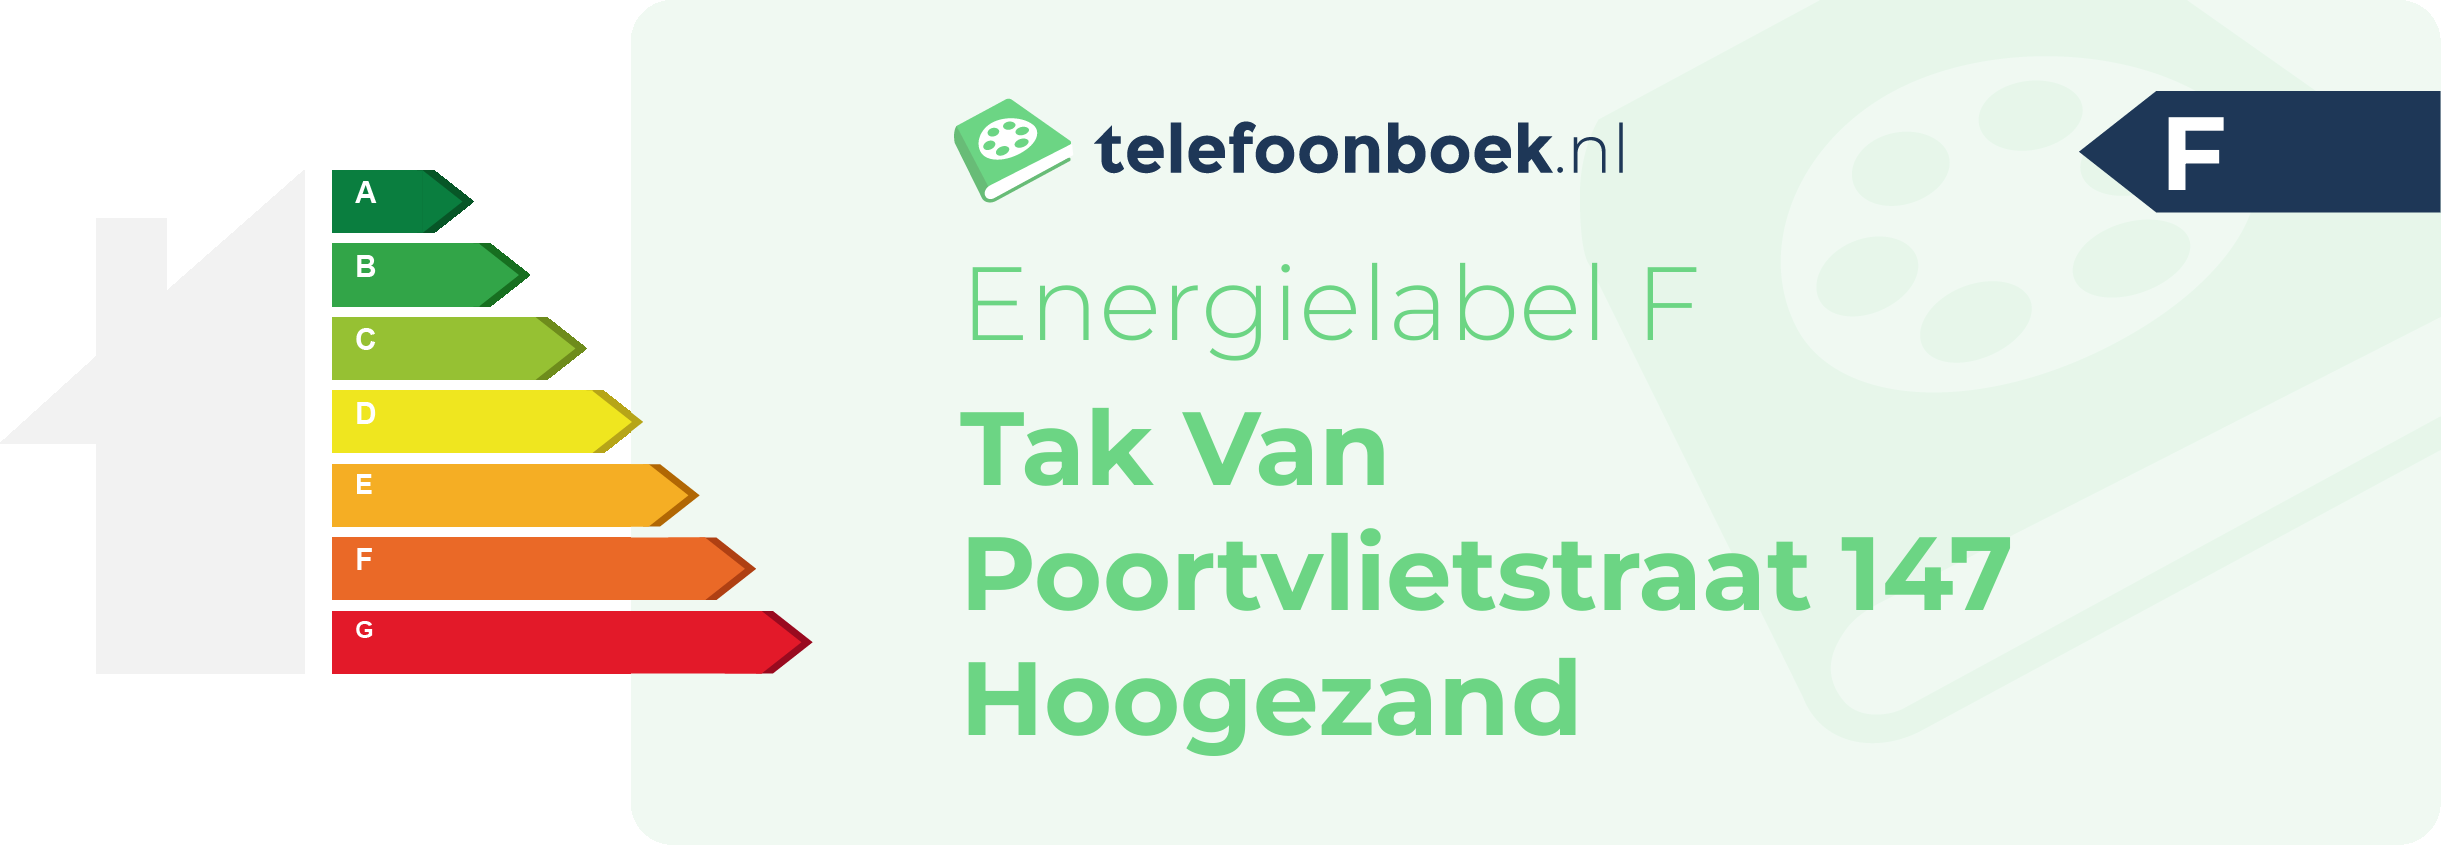 Energielabel Tak Van Poortvlietstraat 147 Hoogezand